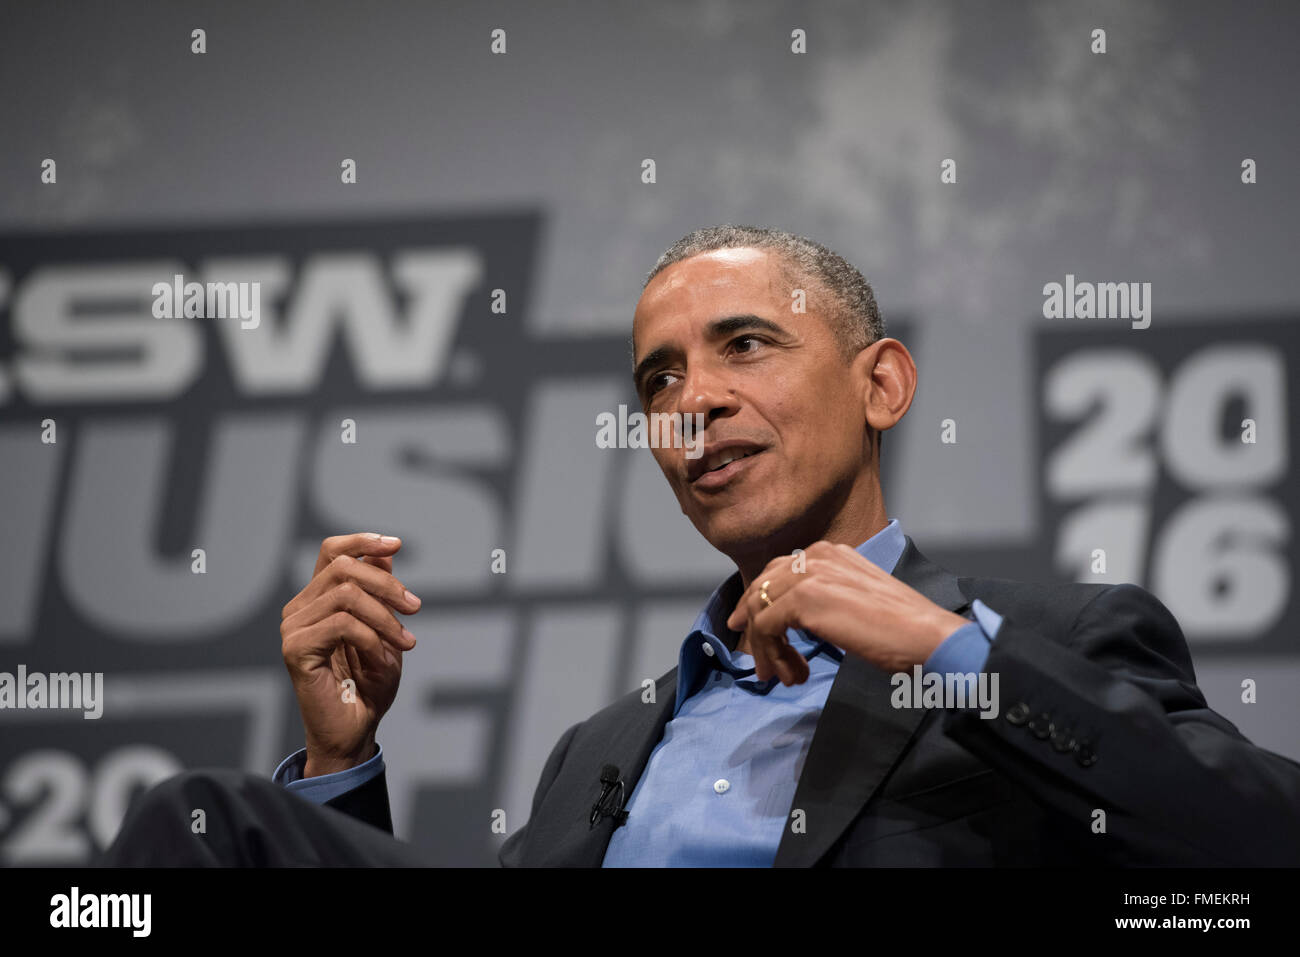 US-Präsident Barack Obama spricht über die digitale Kluft in einer Keynote-Vortrag auf der SXSW Interactive Conference in Austin Stockfoto